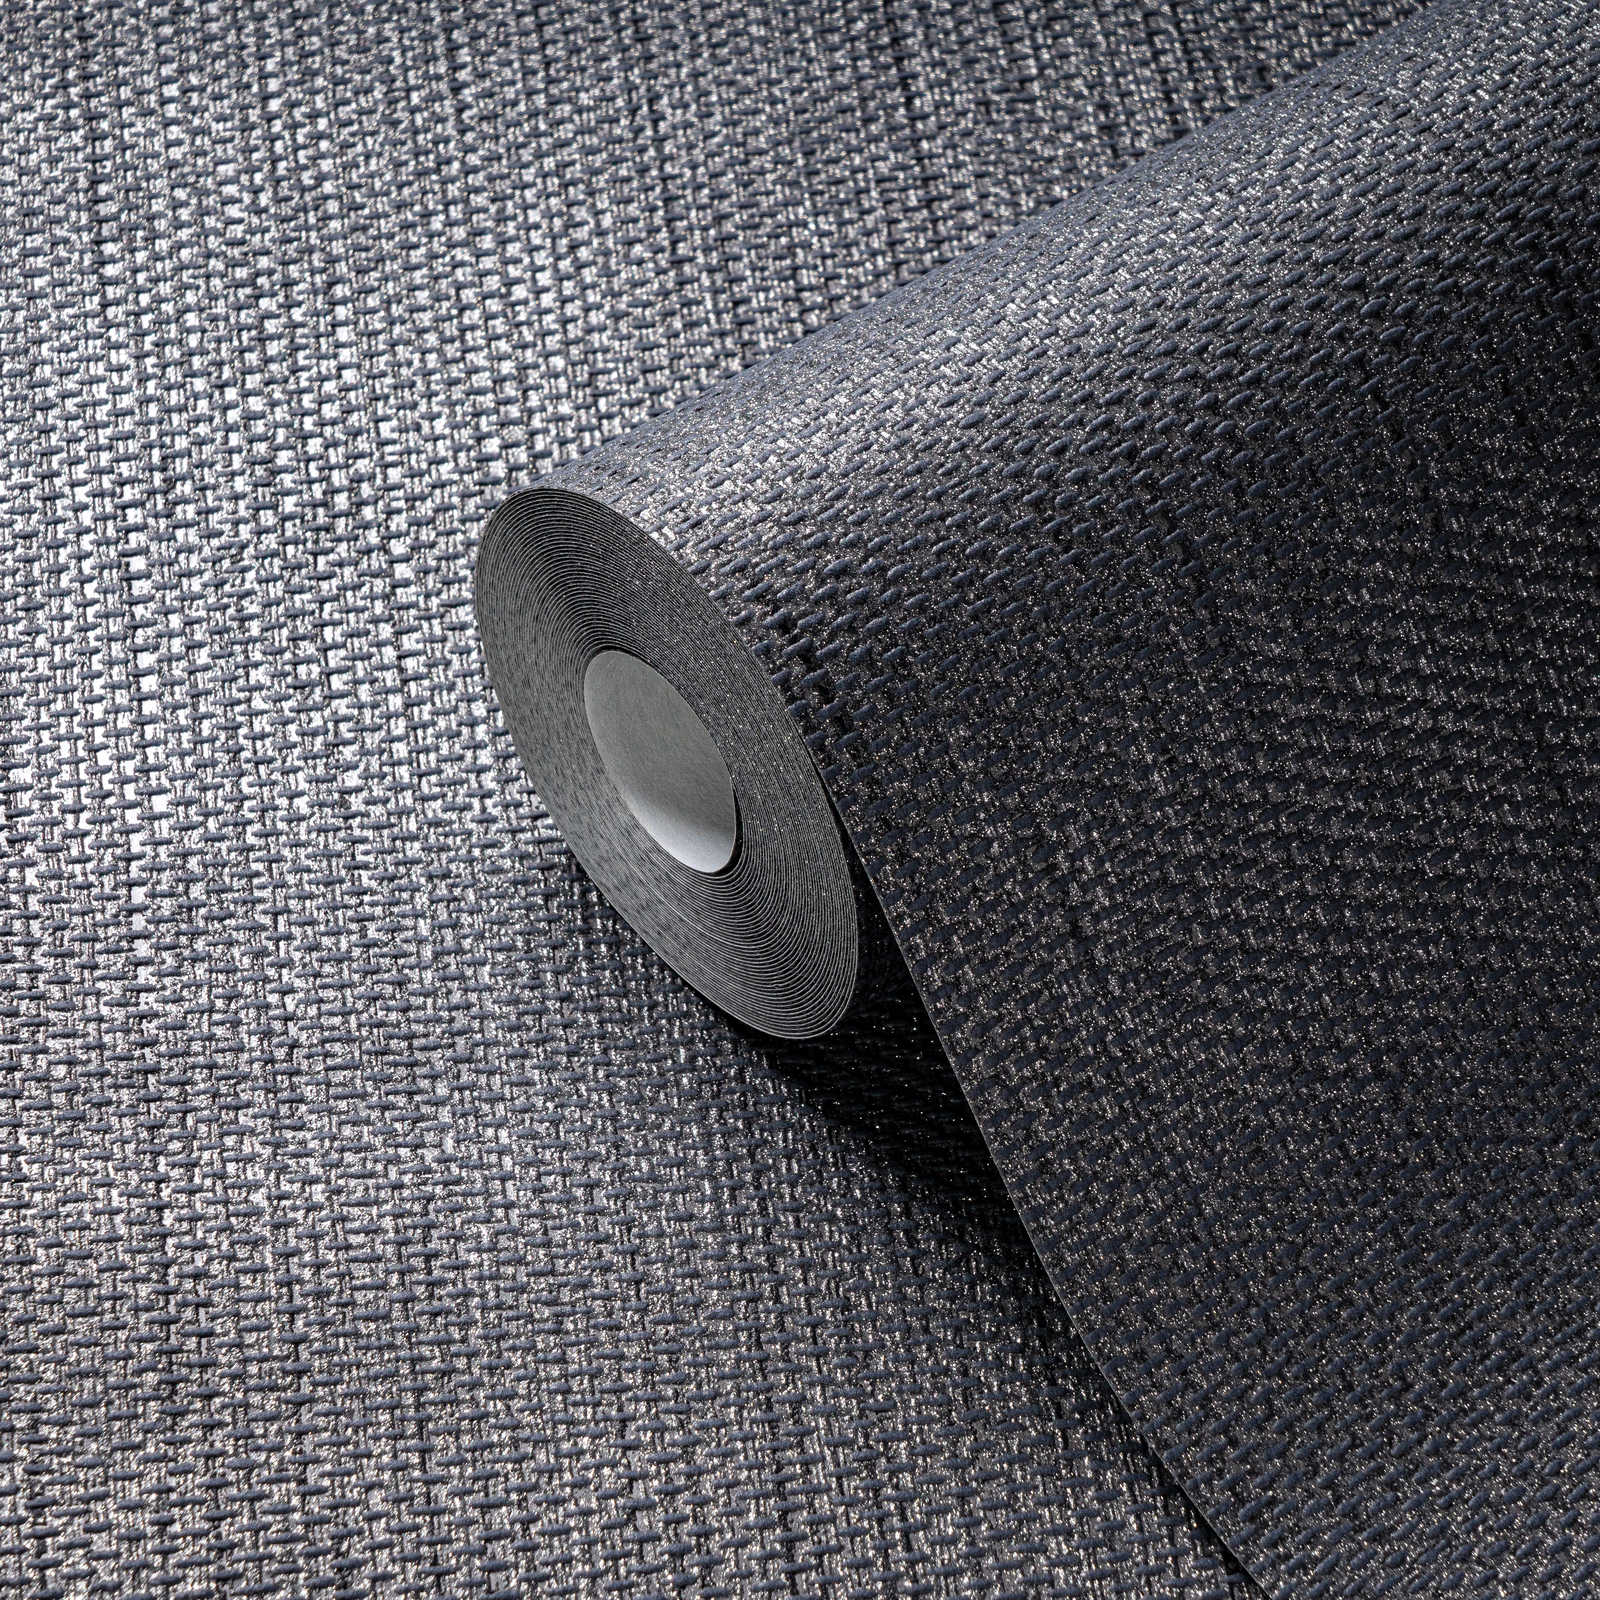             Linnenachtig behang met textielstructuur - grijs, zwart
        